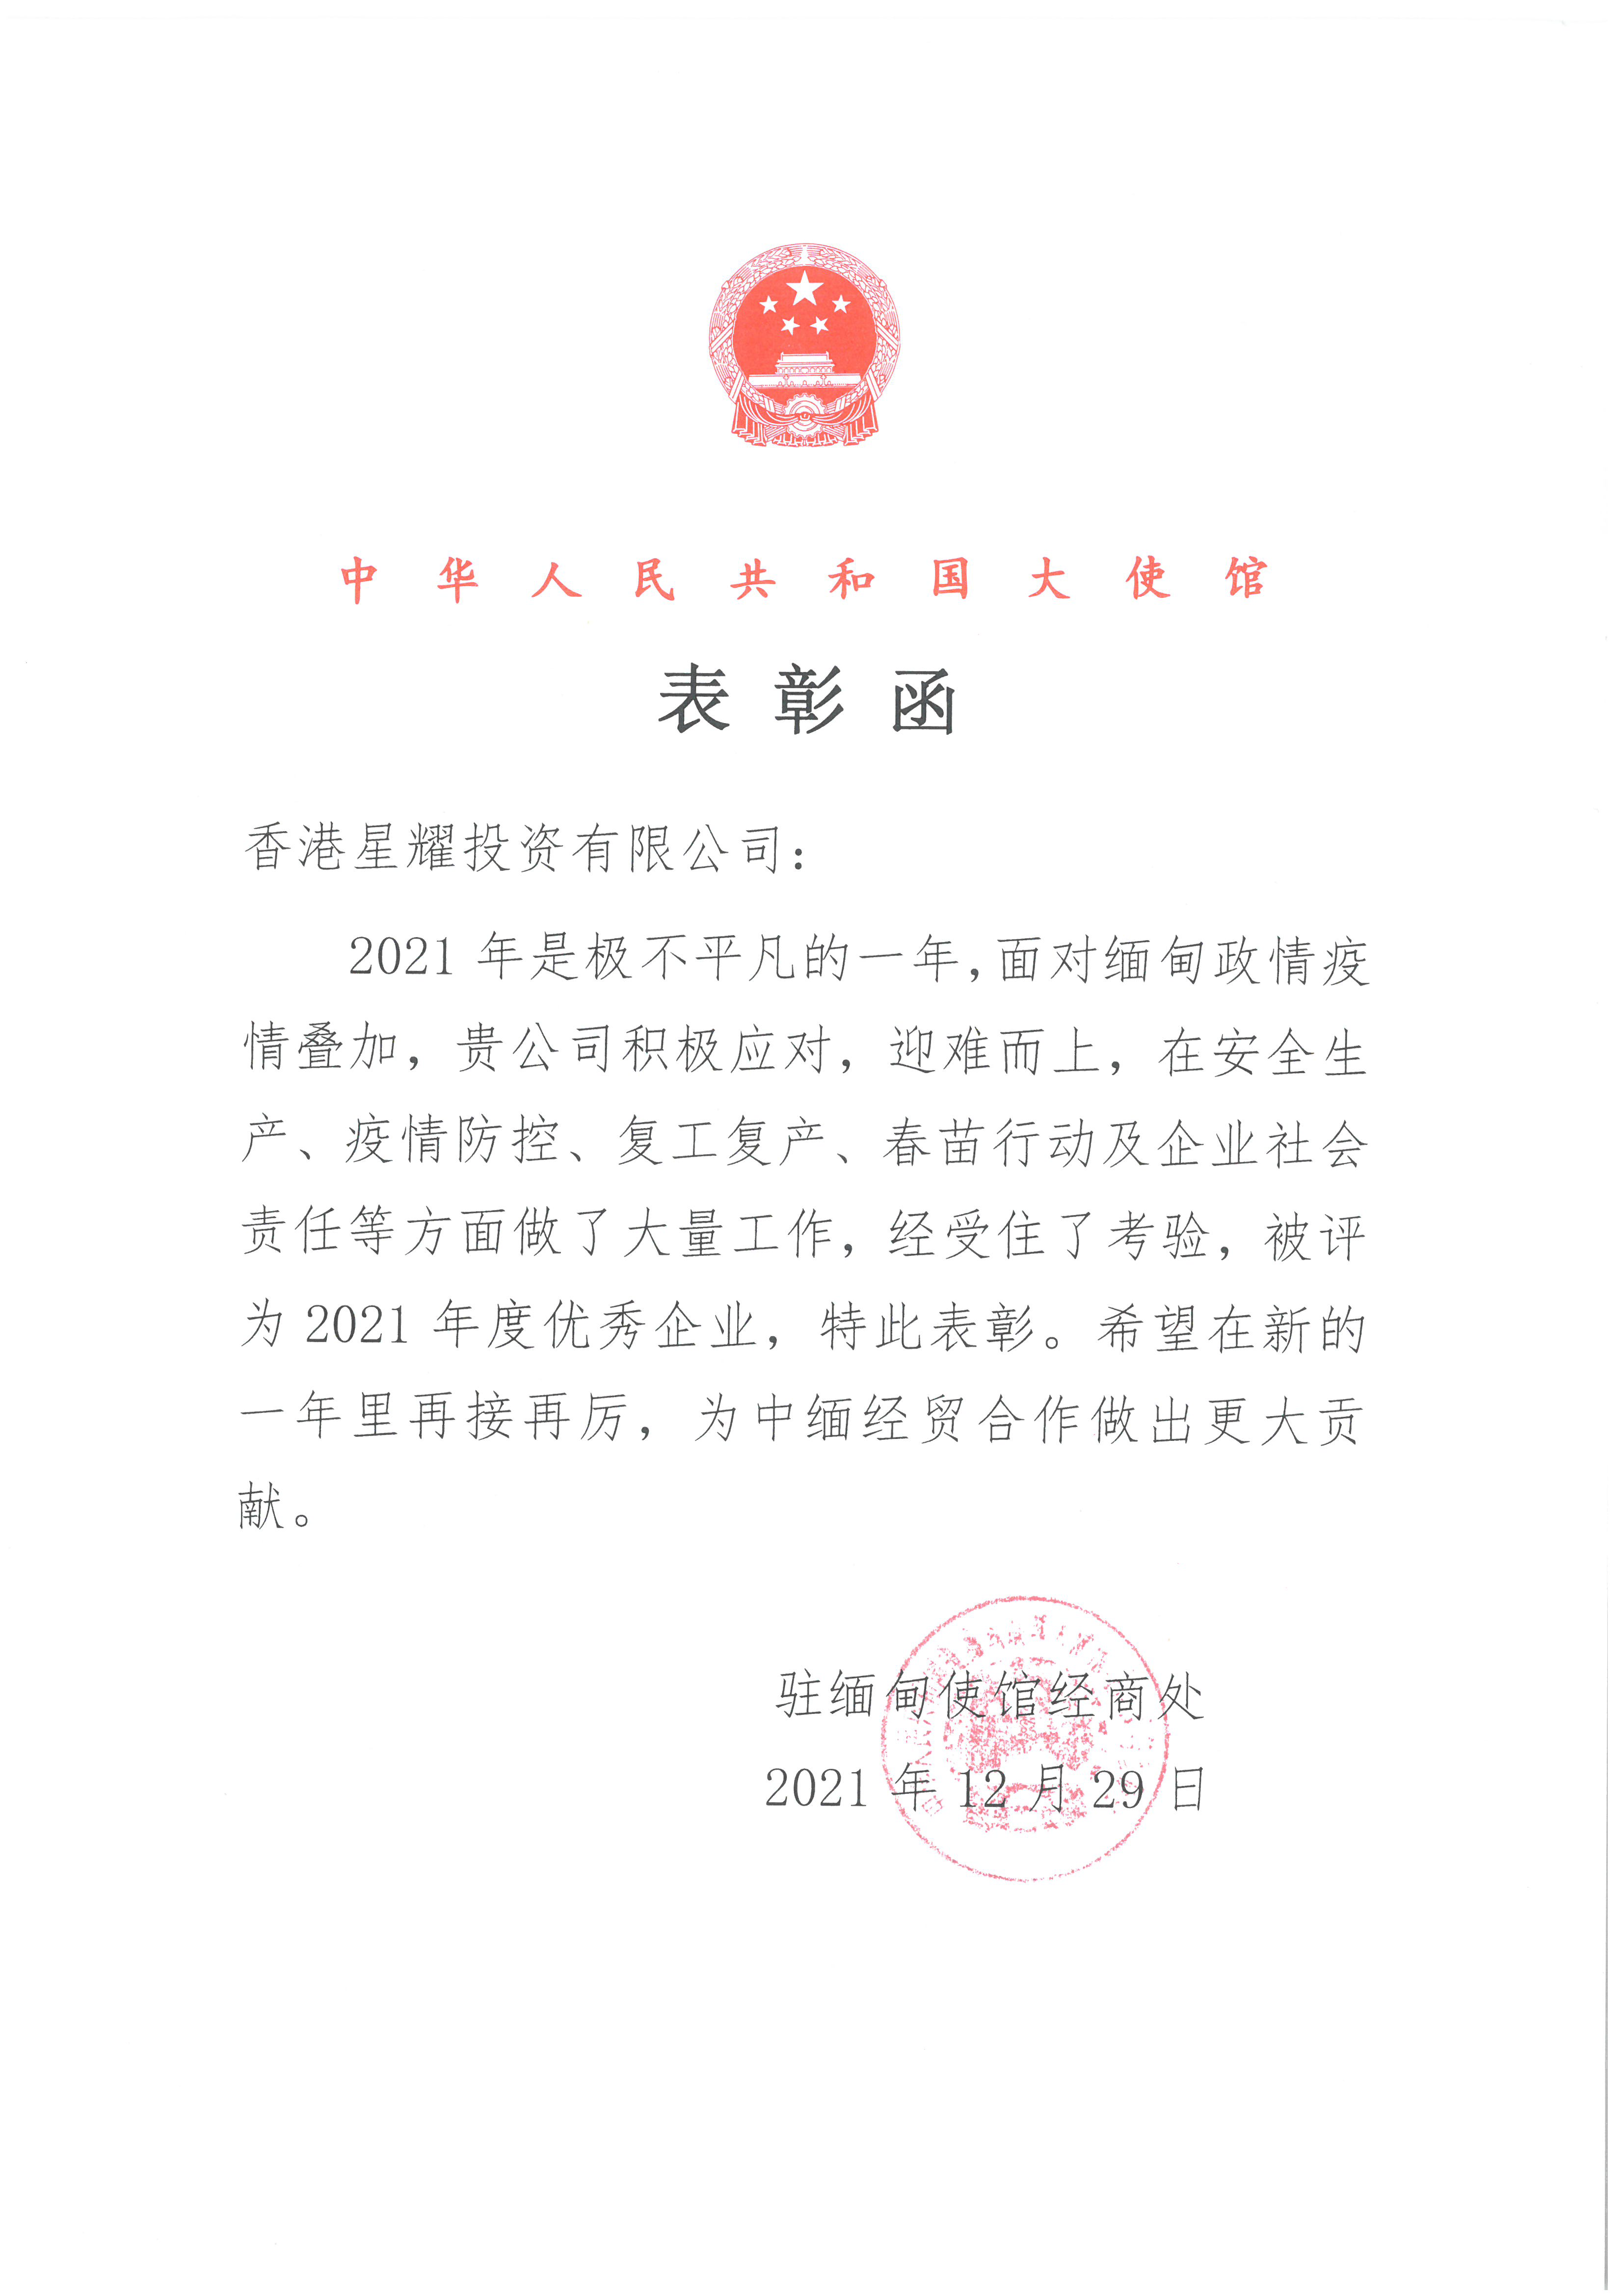 中國駐緬甸大使館表彰函、“2021年度優秀企業”